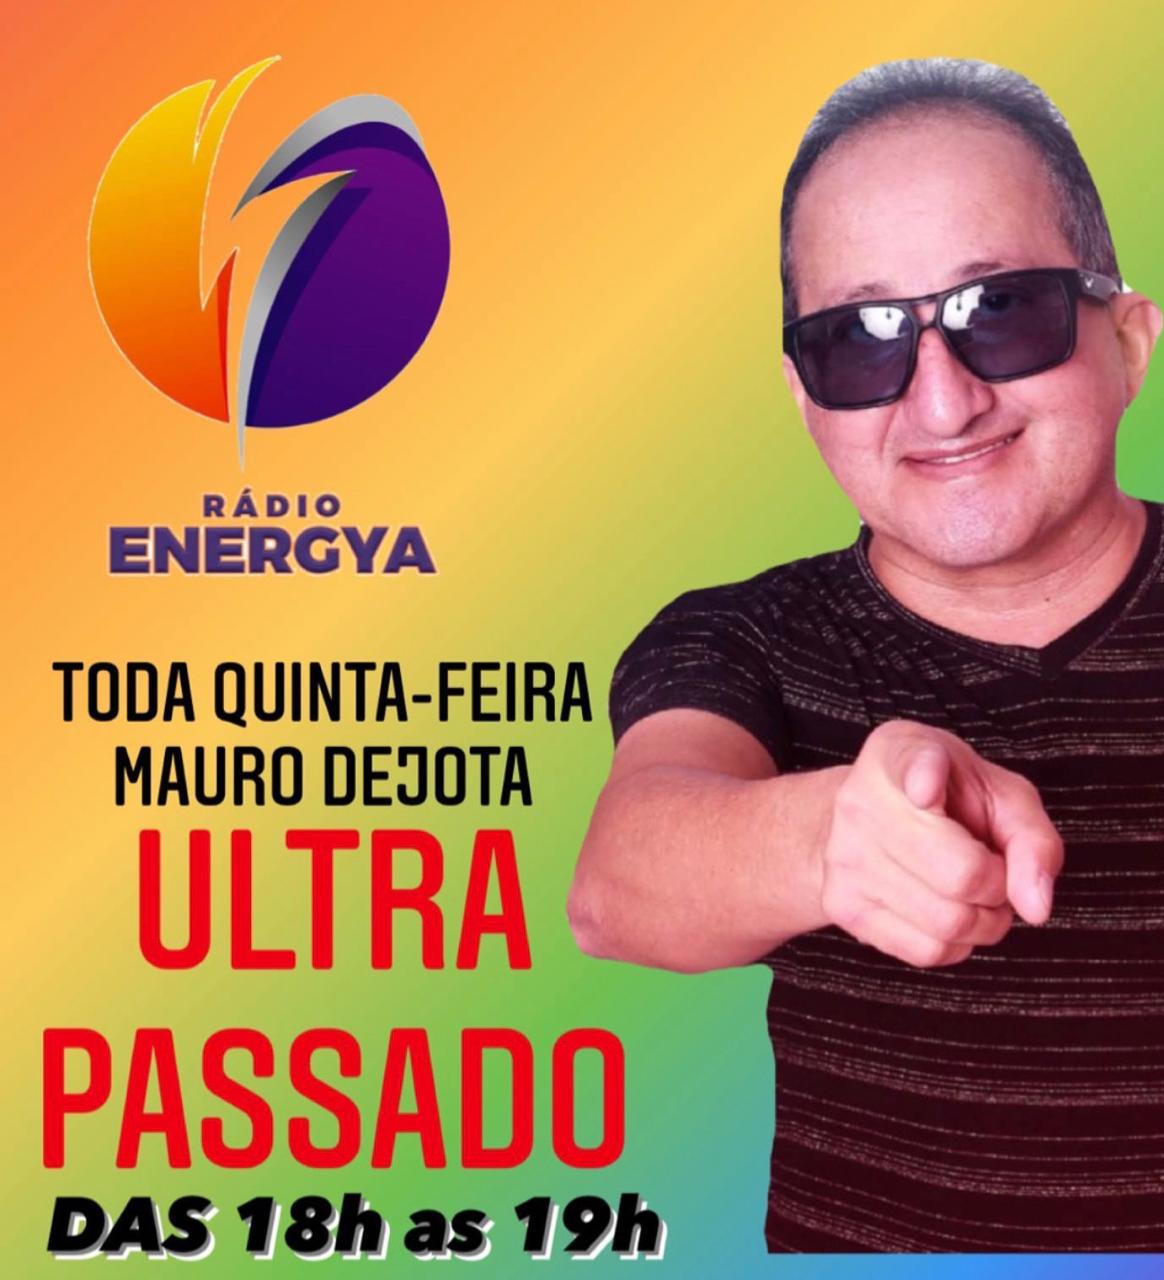 DJ Mauro Djota